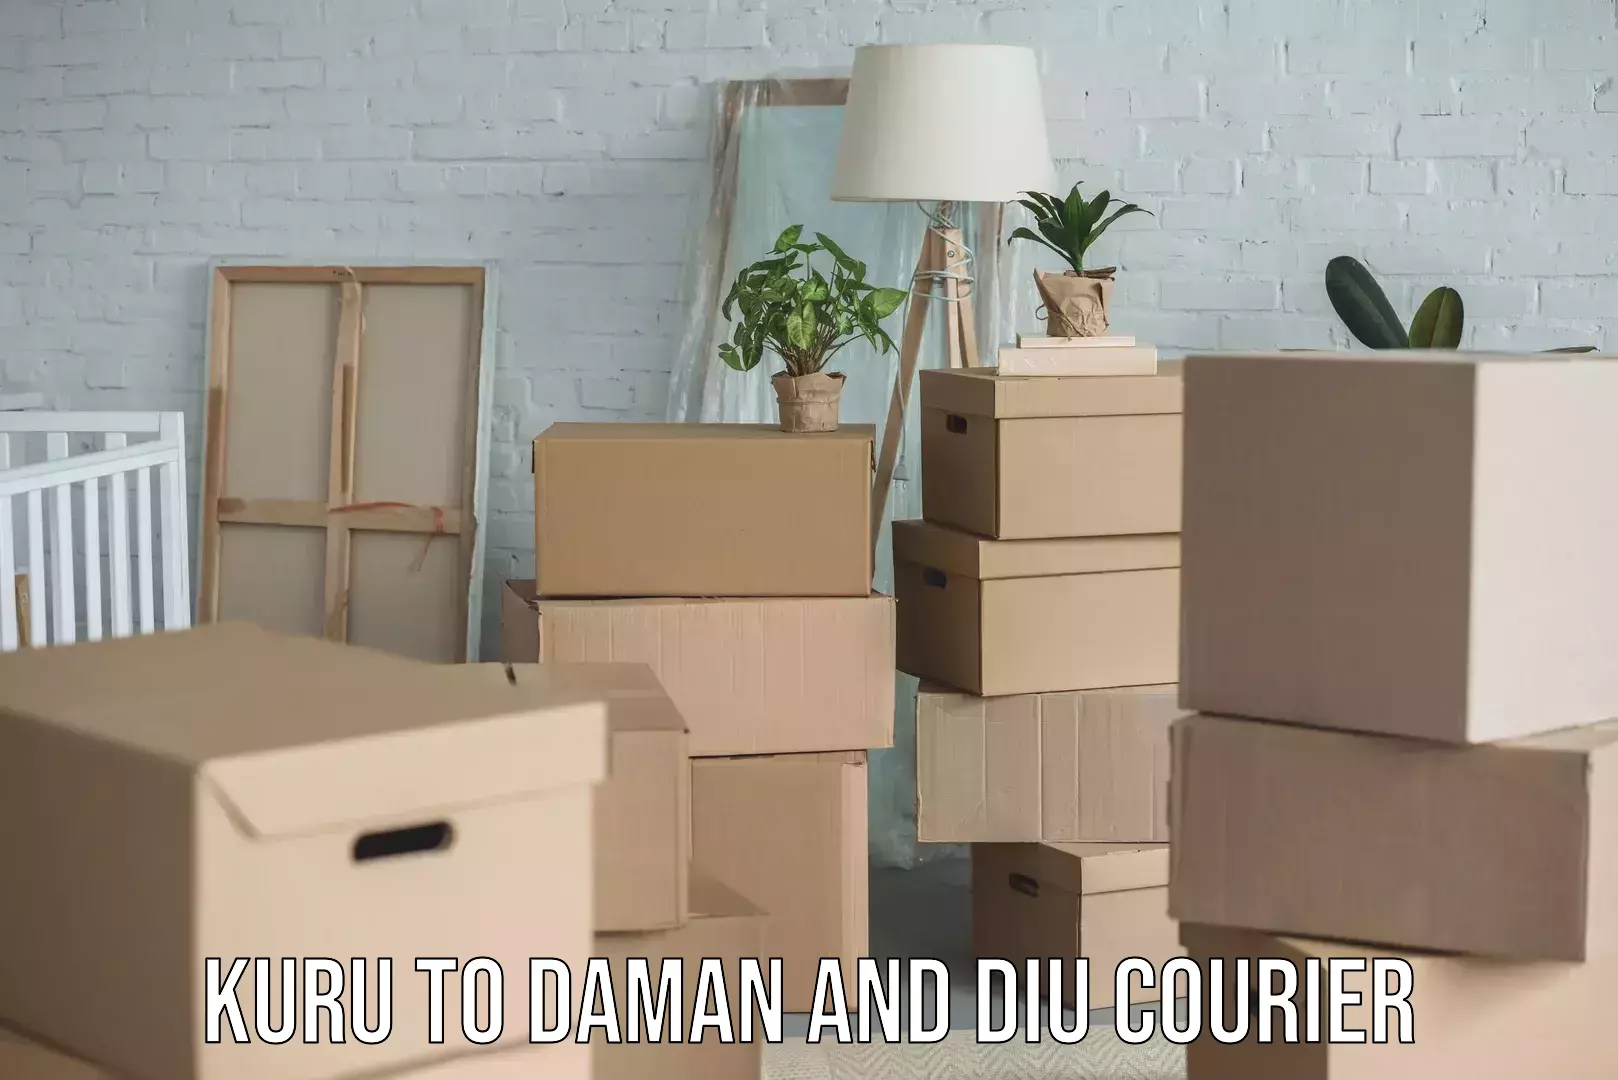 Furniture relocation experts Kuru to Daman and Diu